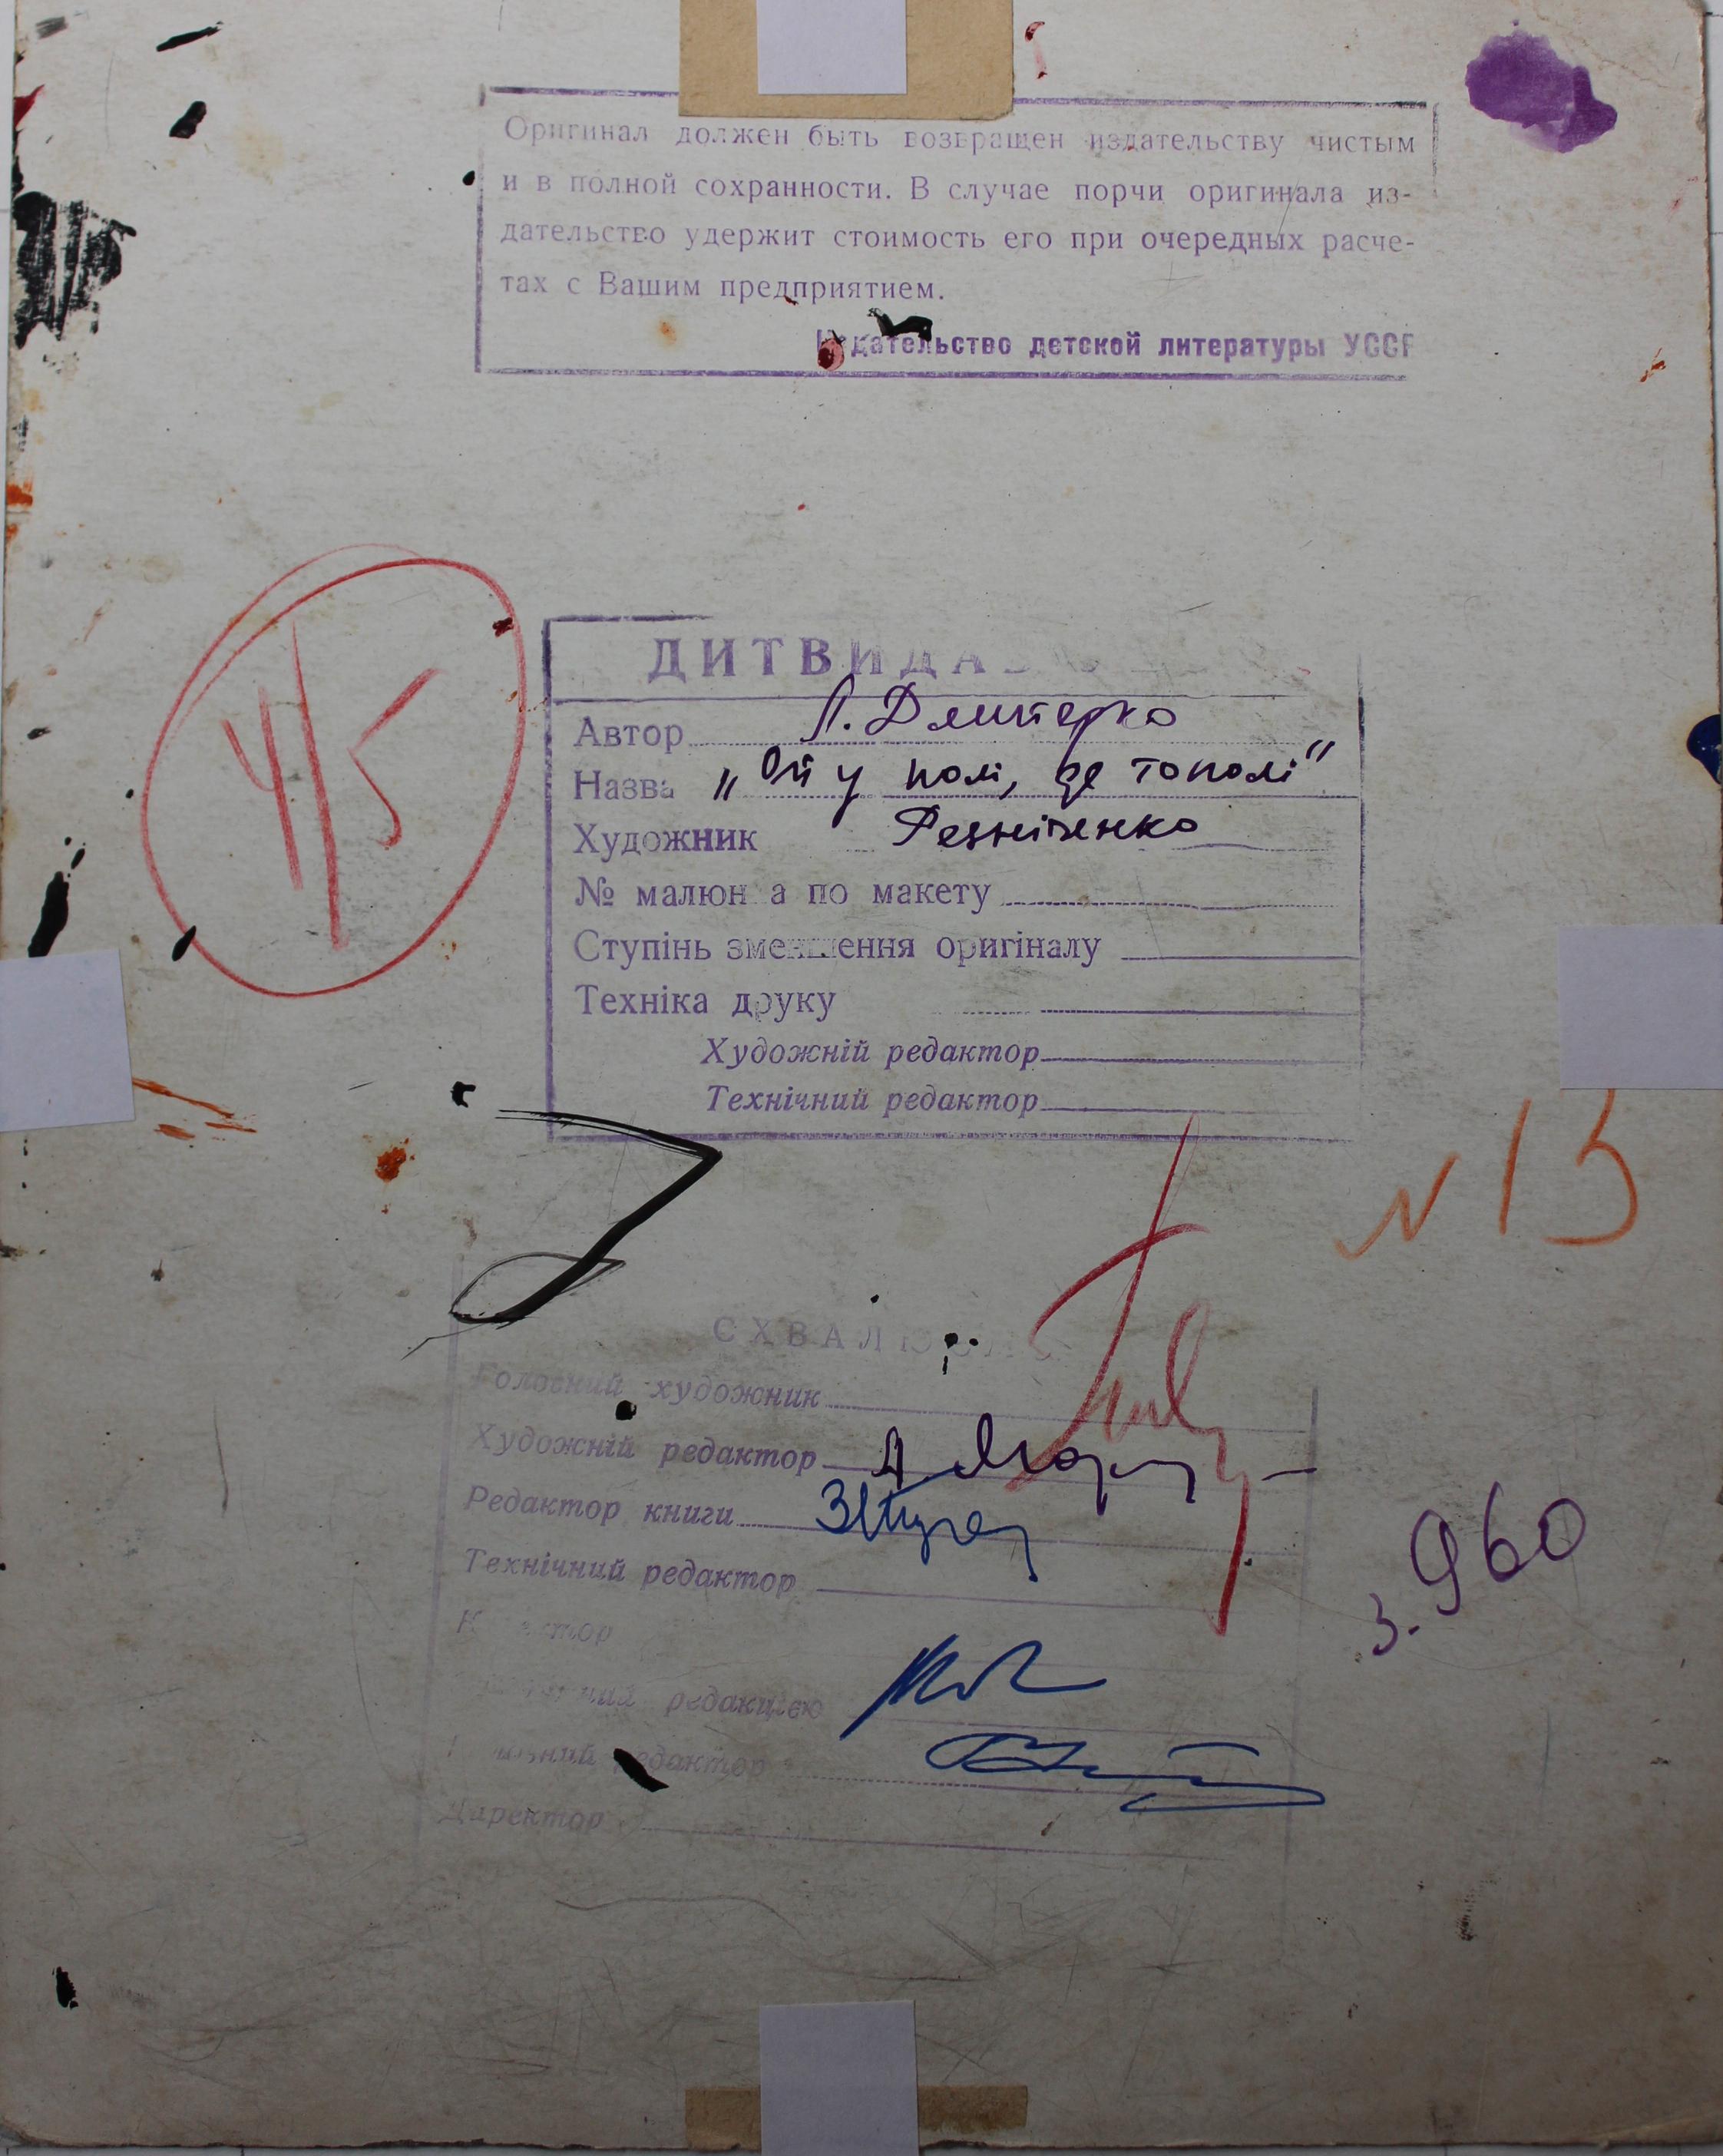 Рисунок к книге Л.Дмитерко ой у поли де тополи 18-23 см., бумага, карандаш, тушь 1961-1963 года - 1